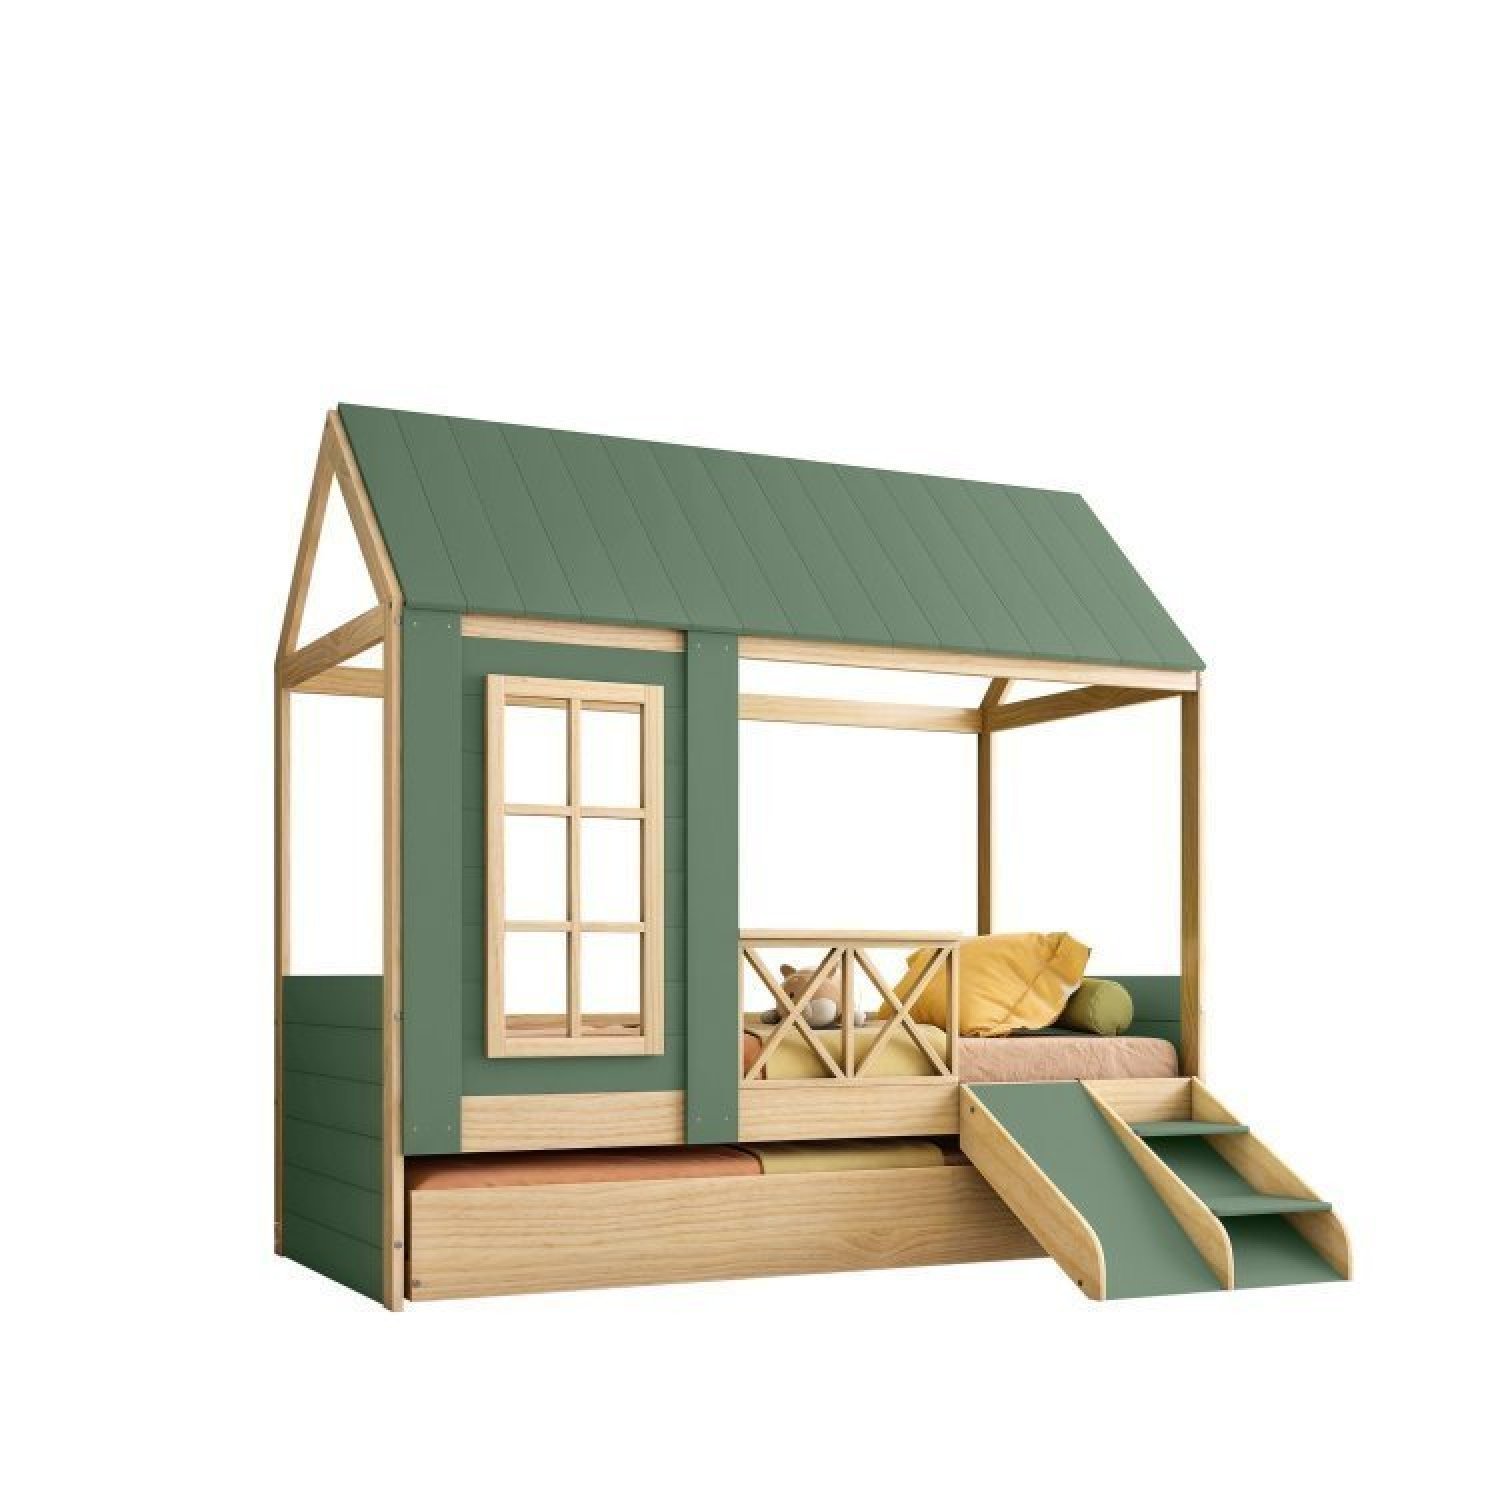 Bicama Solteiro Infantil Reversível Telhado Completo Casinha Garden Casatema - 4